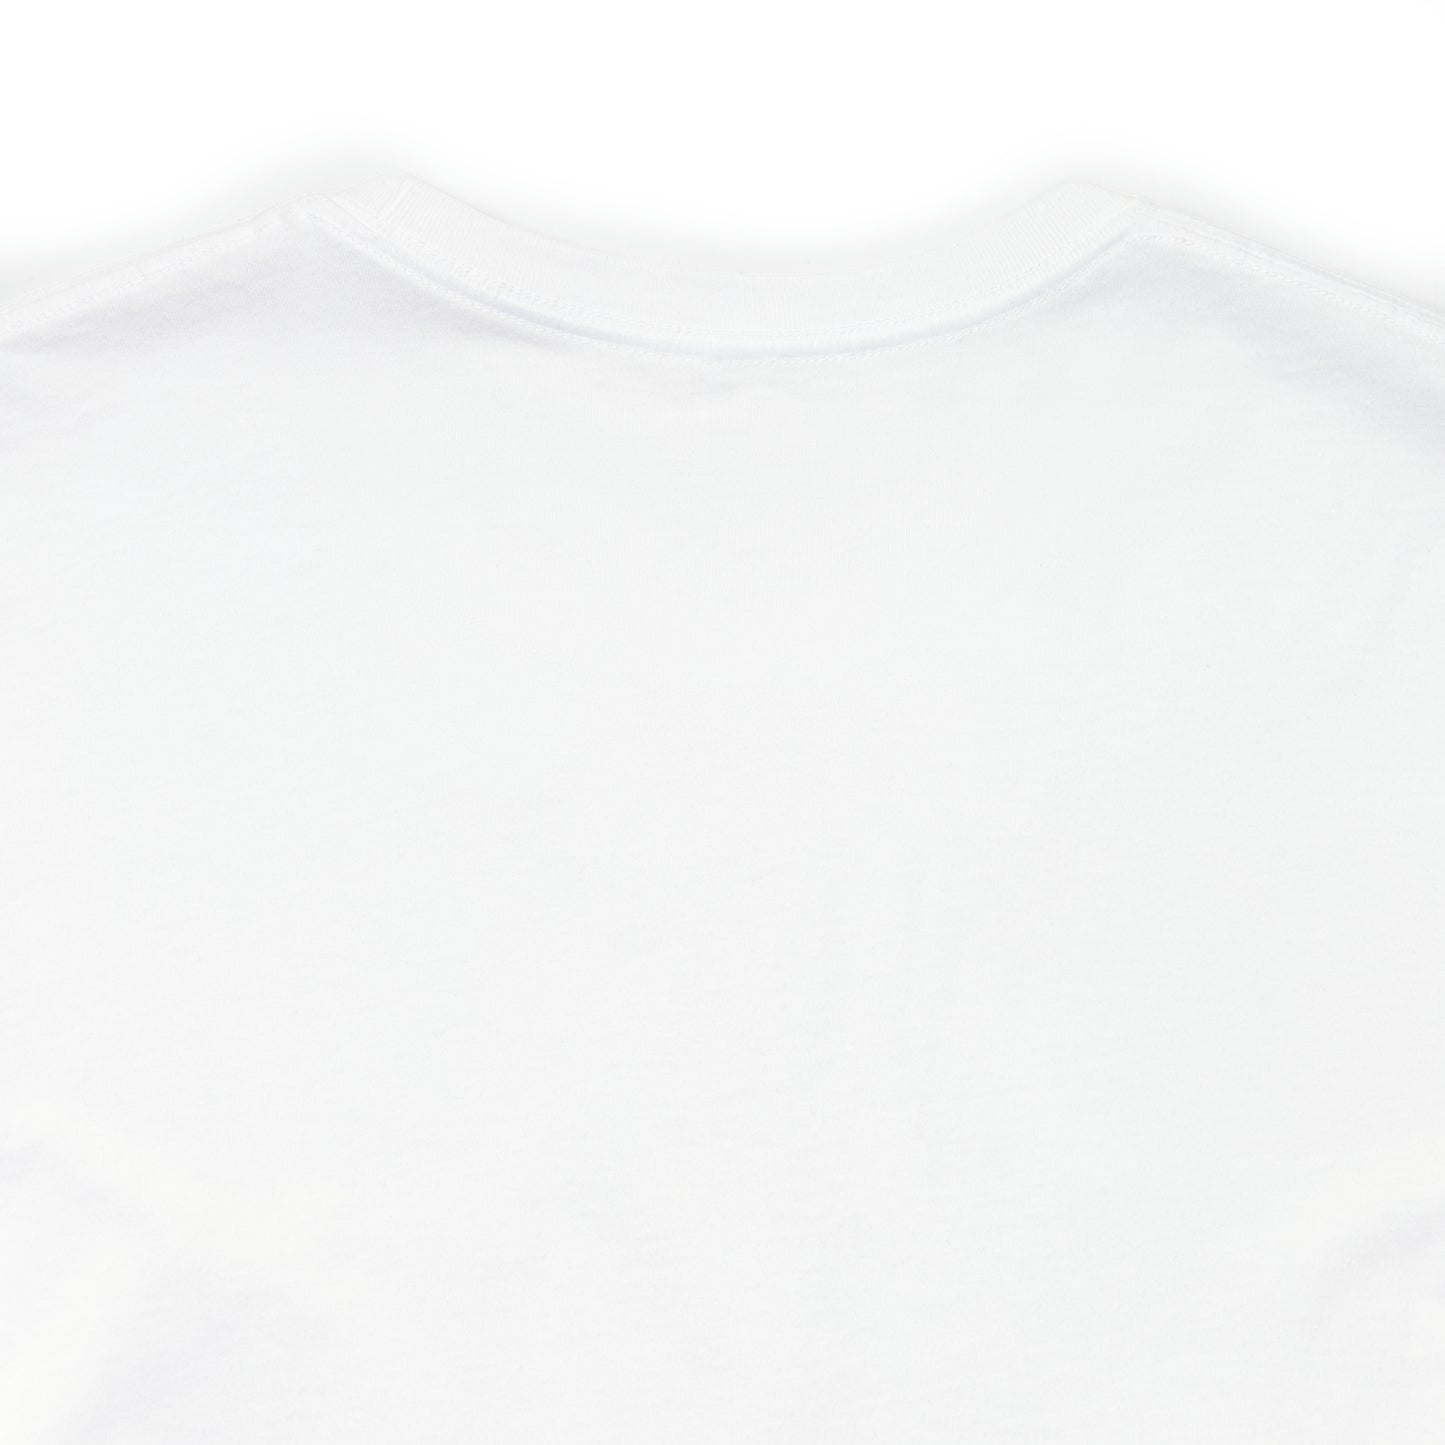 Mio Unisex tričko s krátkým rukávem